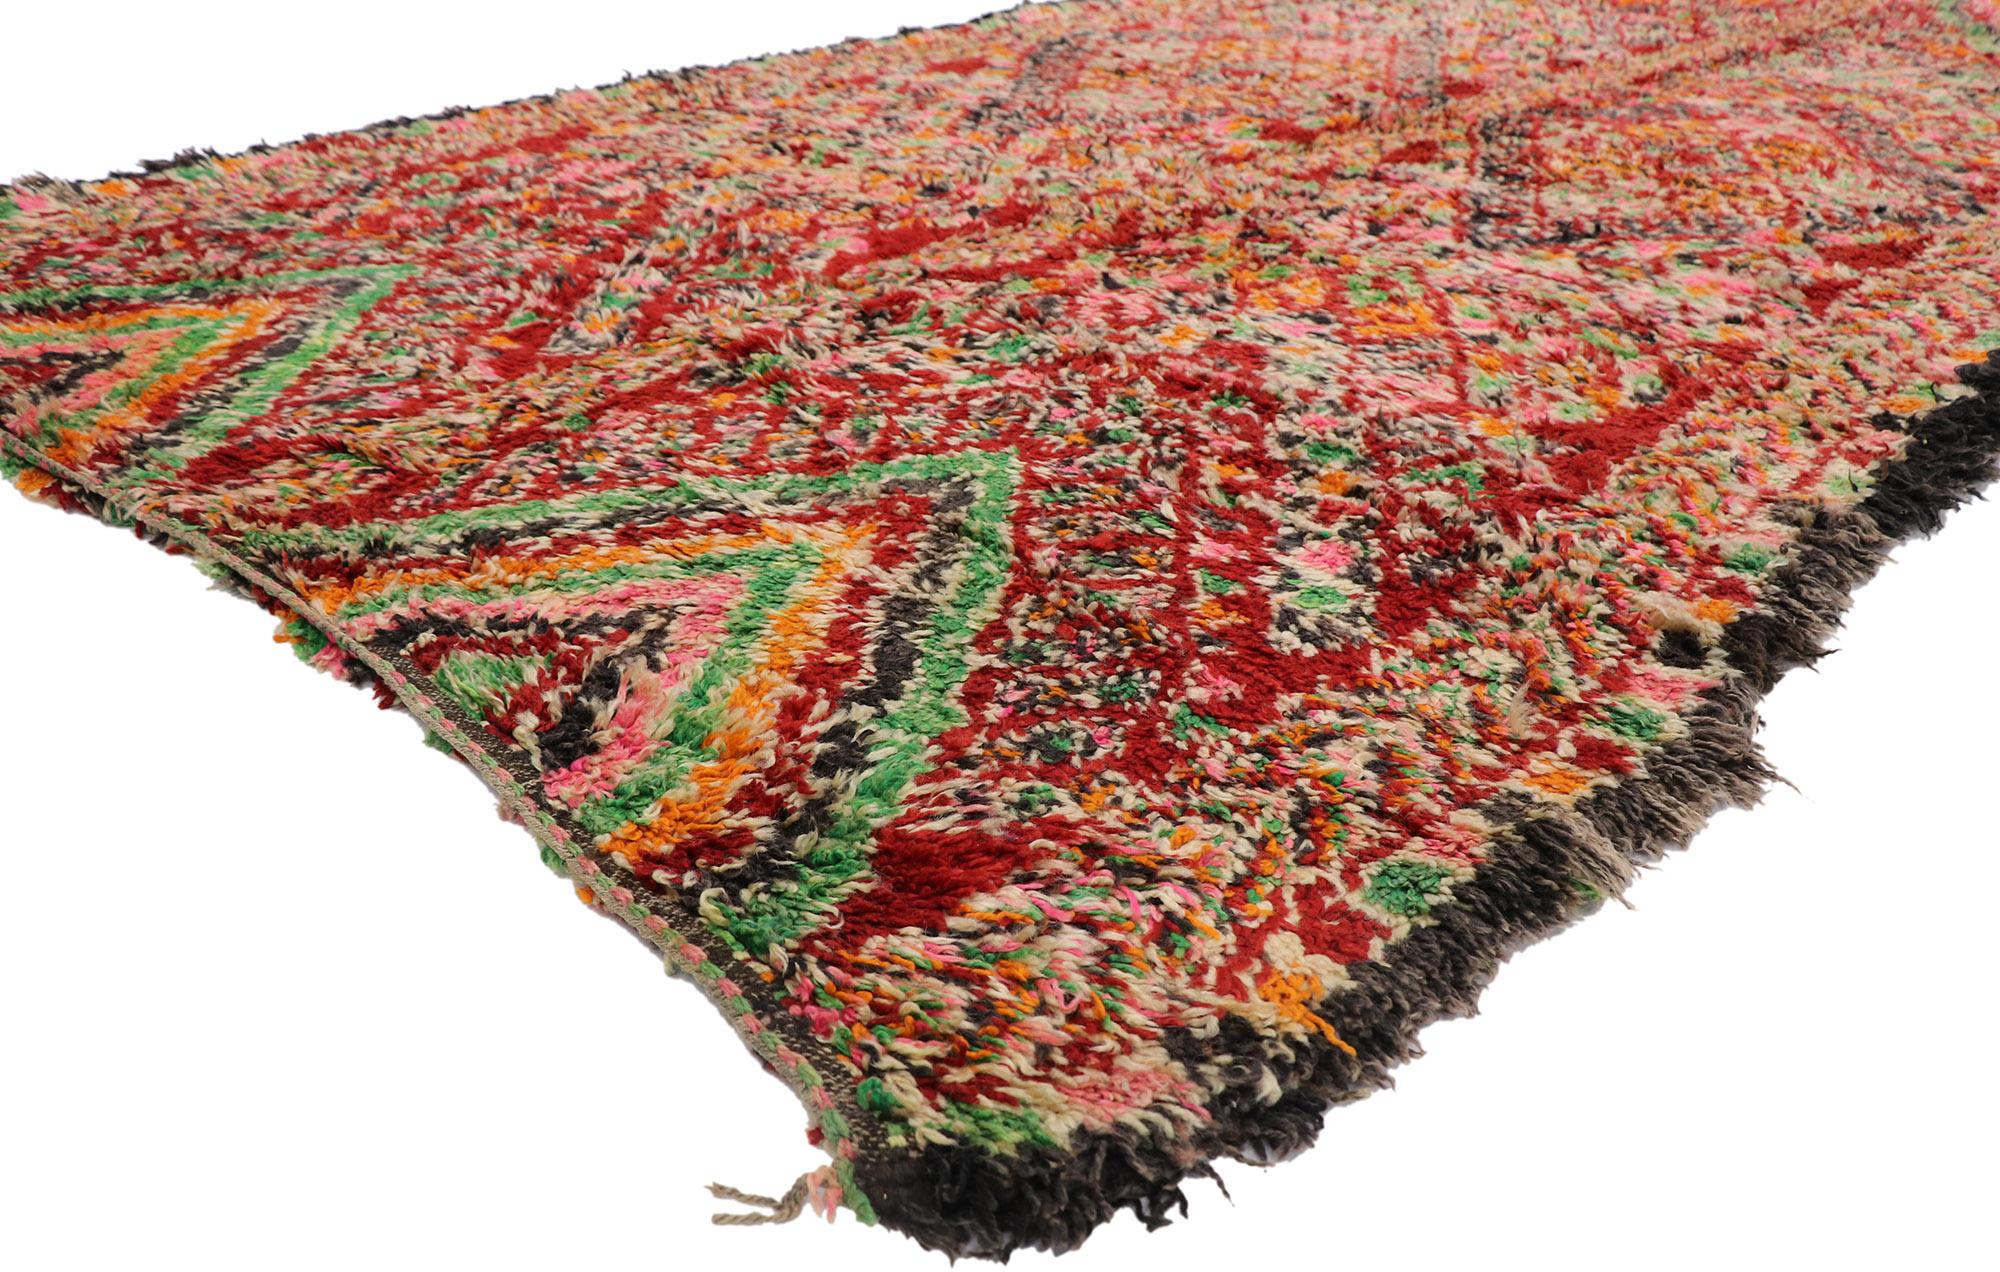 21273 Vintage Berber Beni M'Guild Marokkanischer Teppich mit Boho Chic Tribal Style 06'01 x 12'05. Dieser handgeknüpfte marokkanische Beni M'Guild-Teppich aus alter Berberwolle besticht durch sein kühnes, ausdrucksstarkes Design, seine unglaublichen